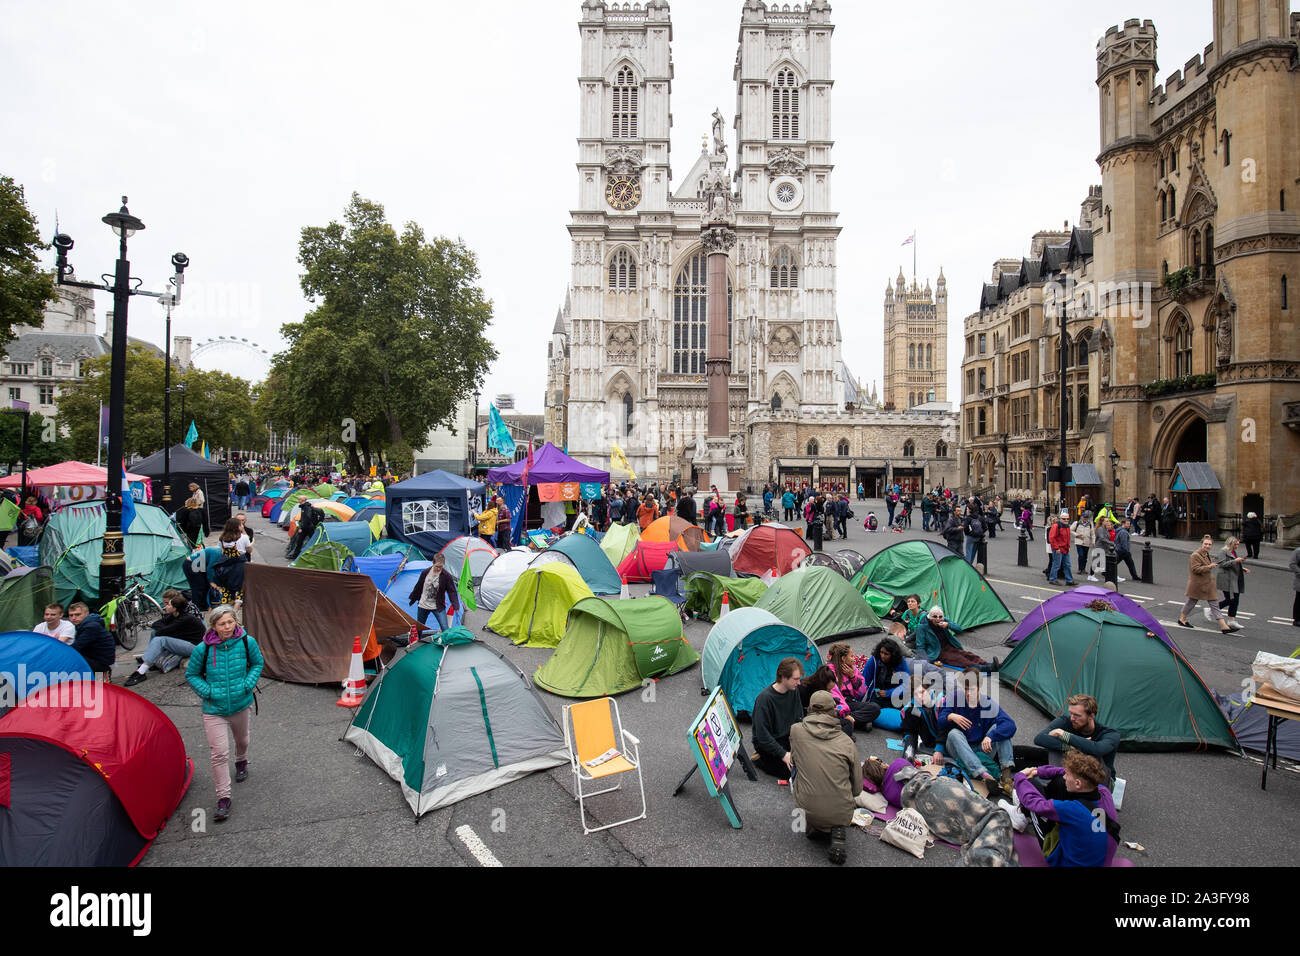 Demonstranten in Zelten in der Victoria Street, Westminster Abbey, während ein Aussterben Rebellion (XR) Protest in Westminster, London. Stockfoto